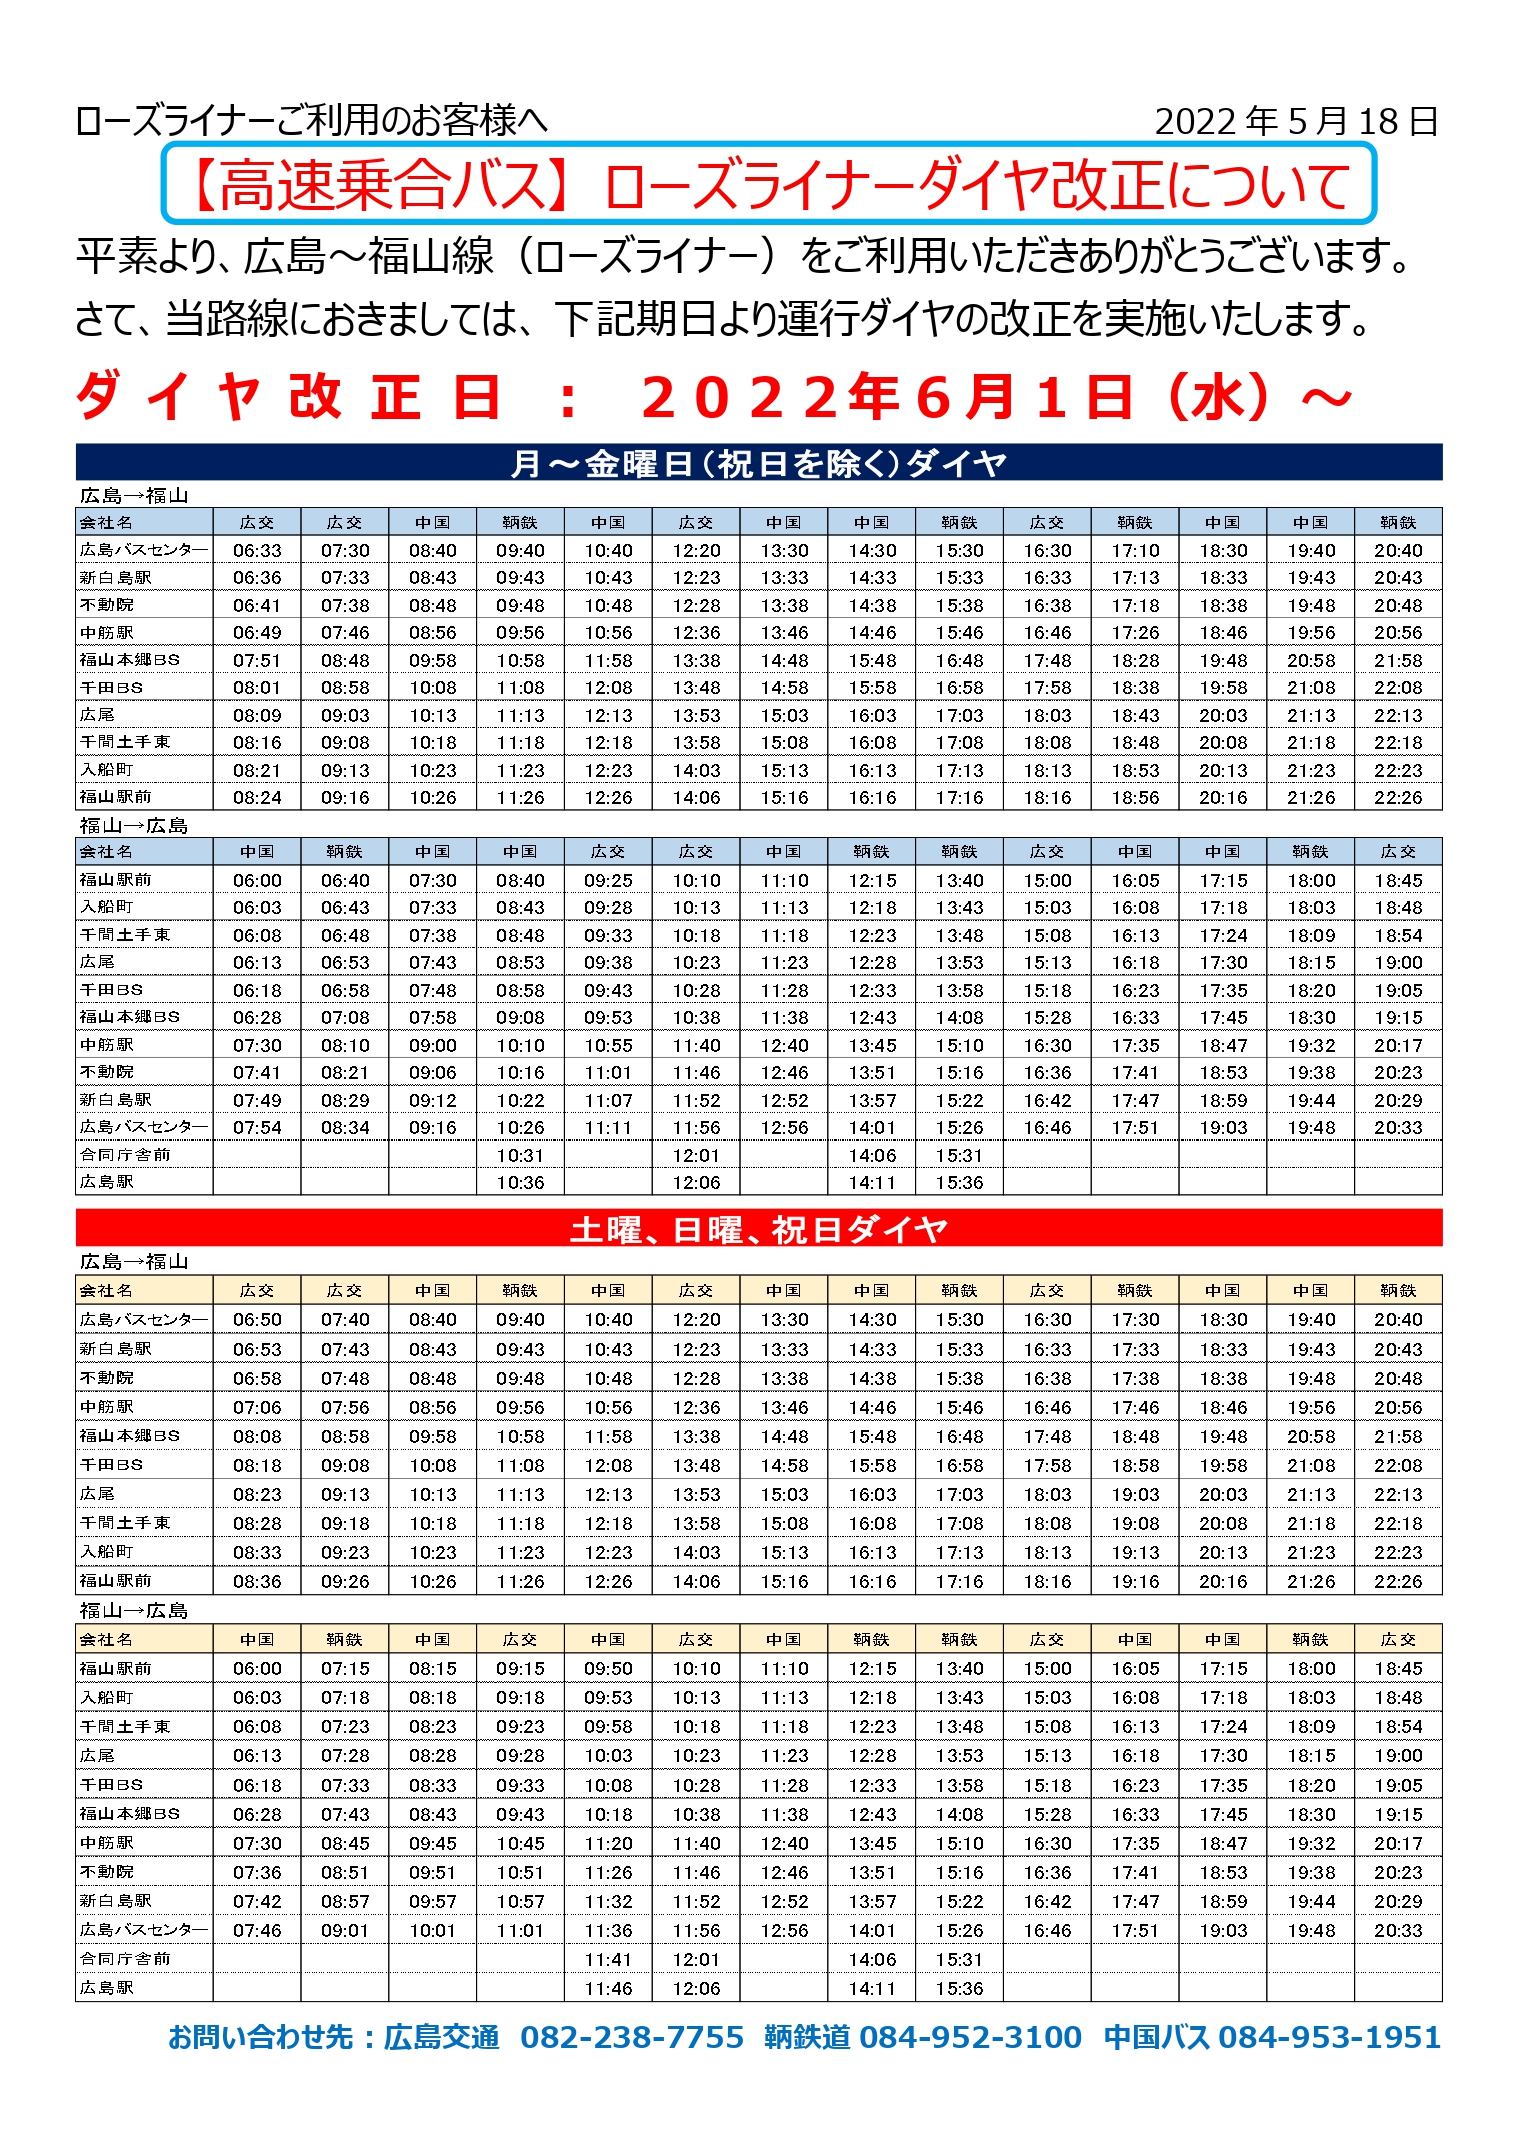 22年6月1日 福山 広島線 ローズライナー のダイヤ改正について 中国バス